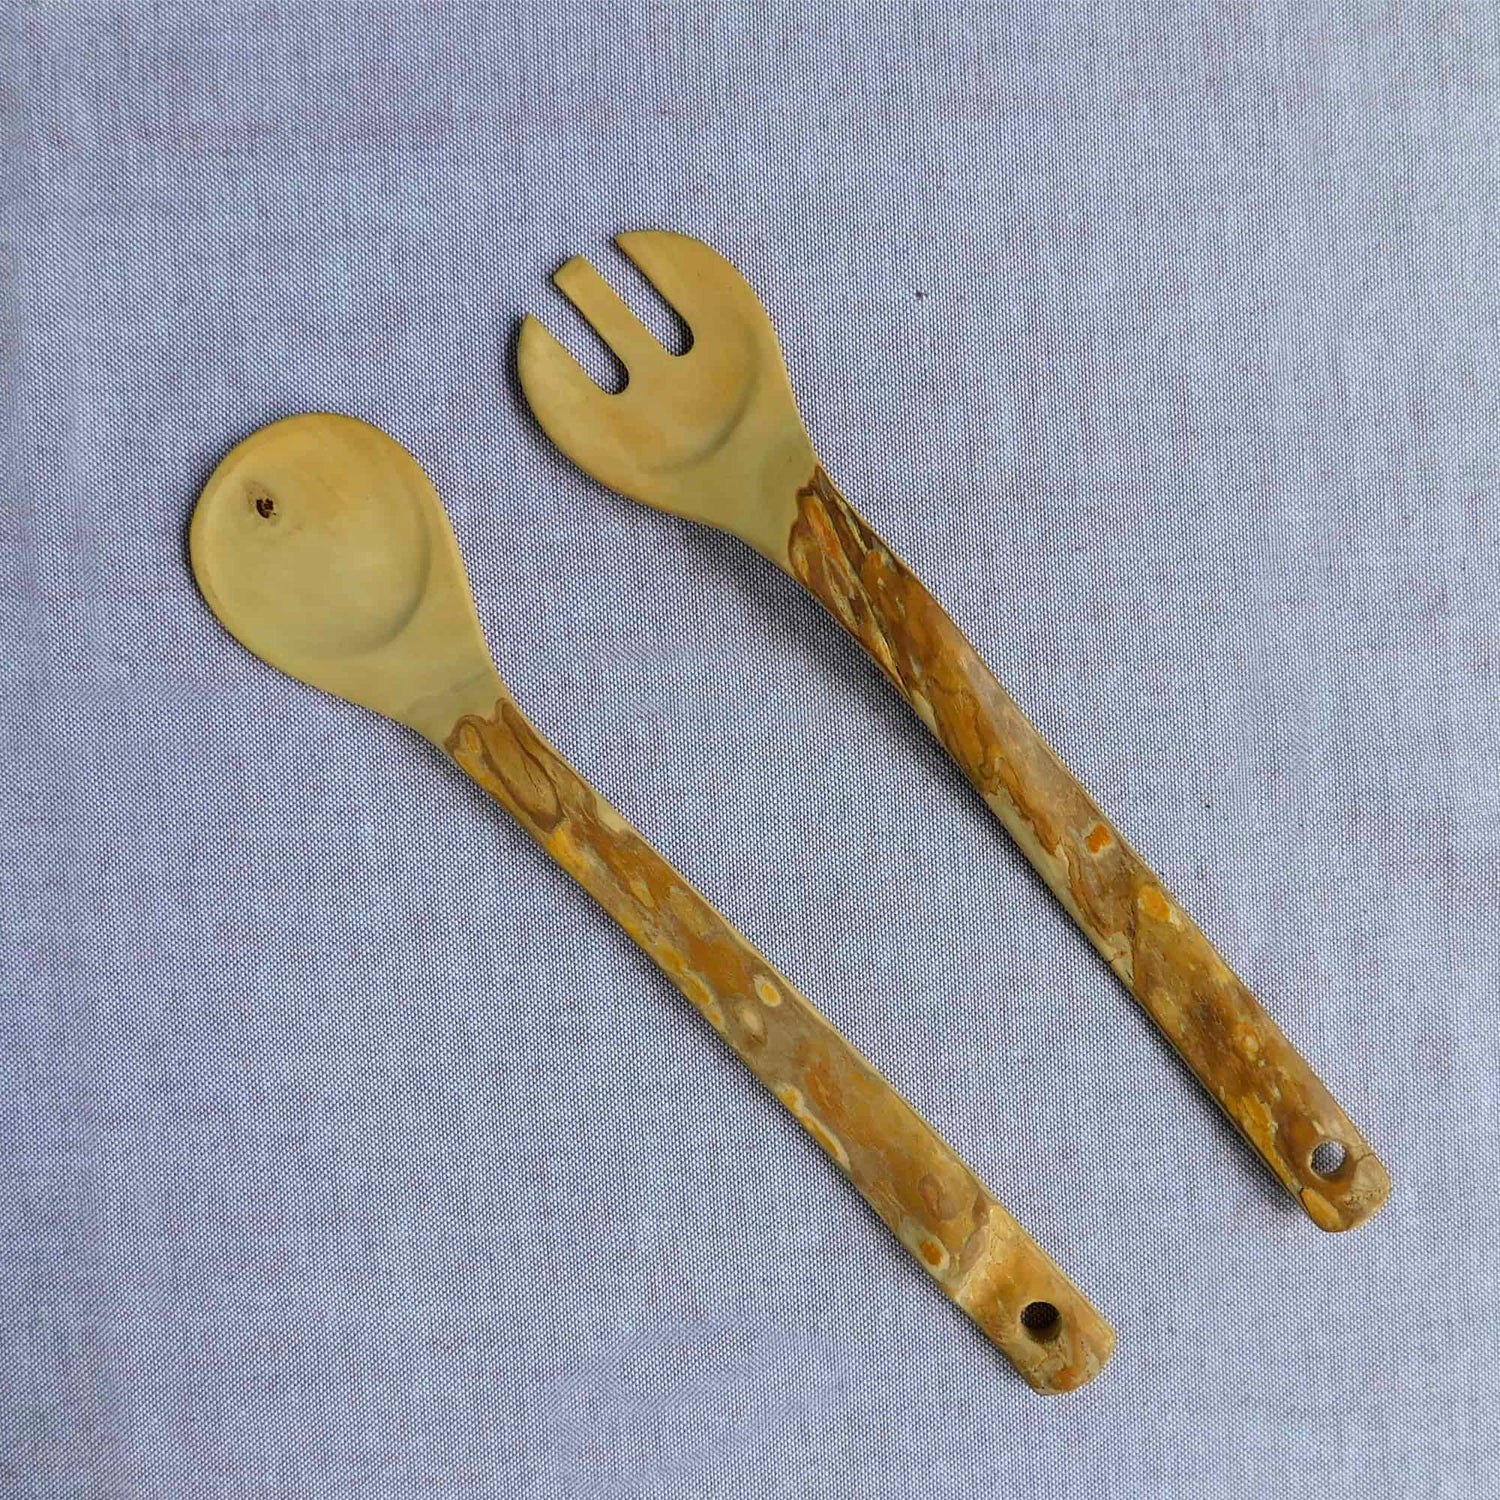 juego de cucharas para ensalada hechas con madera de la raíz de la planta de café